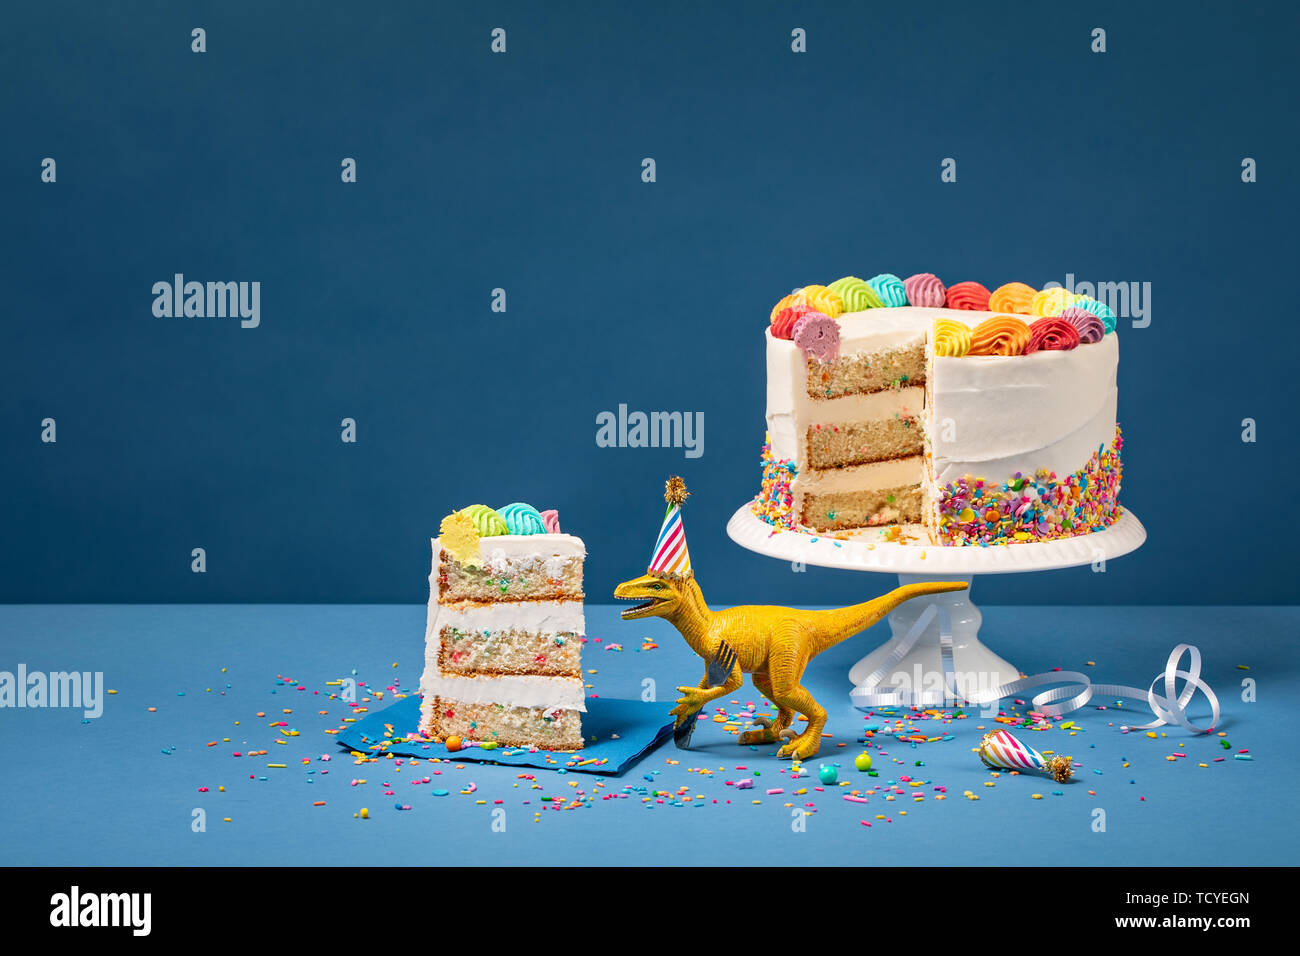 Hungrig Spielzeug Dinosaurier einen Hut tragen und halten eine Gabel neben einen Kuchen auf einem blauen Hintergrund Stockfoto